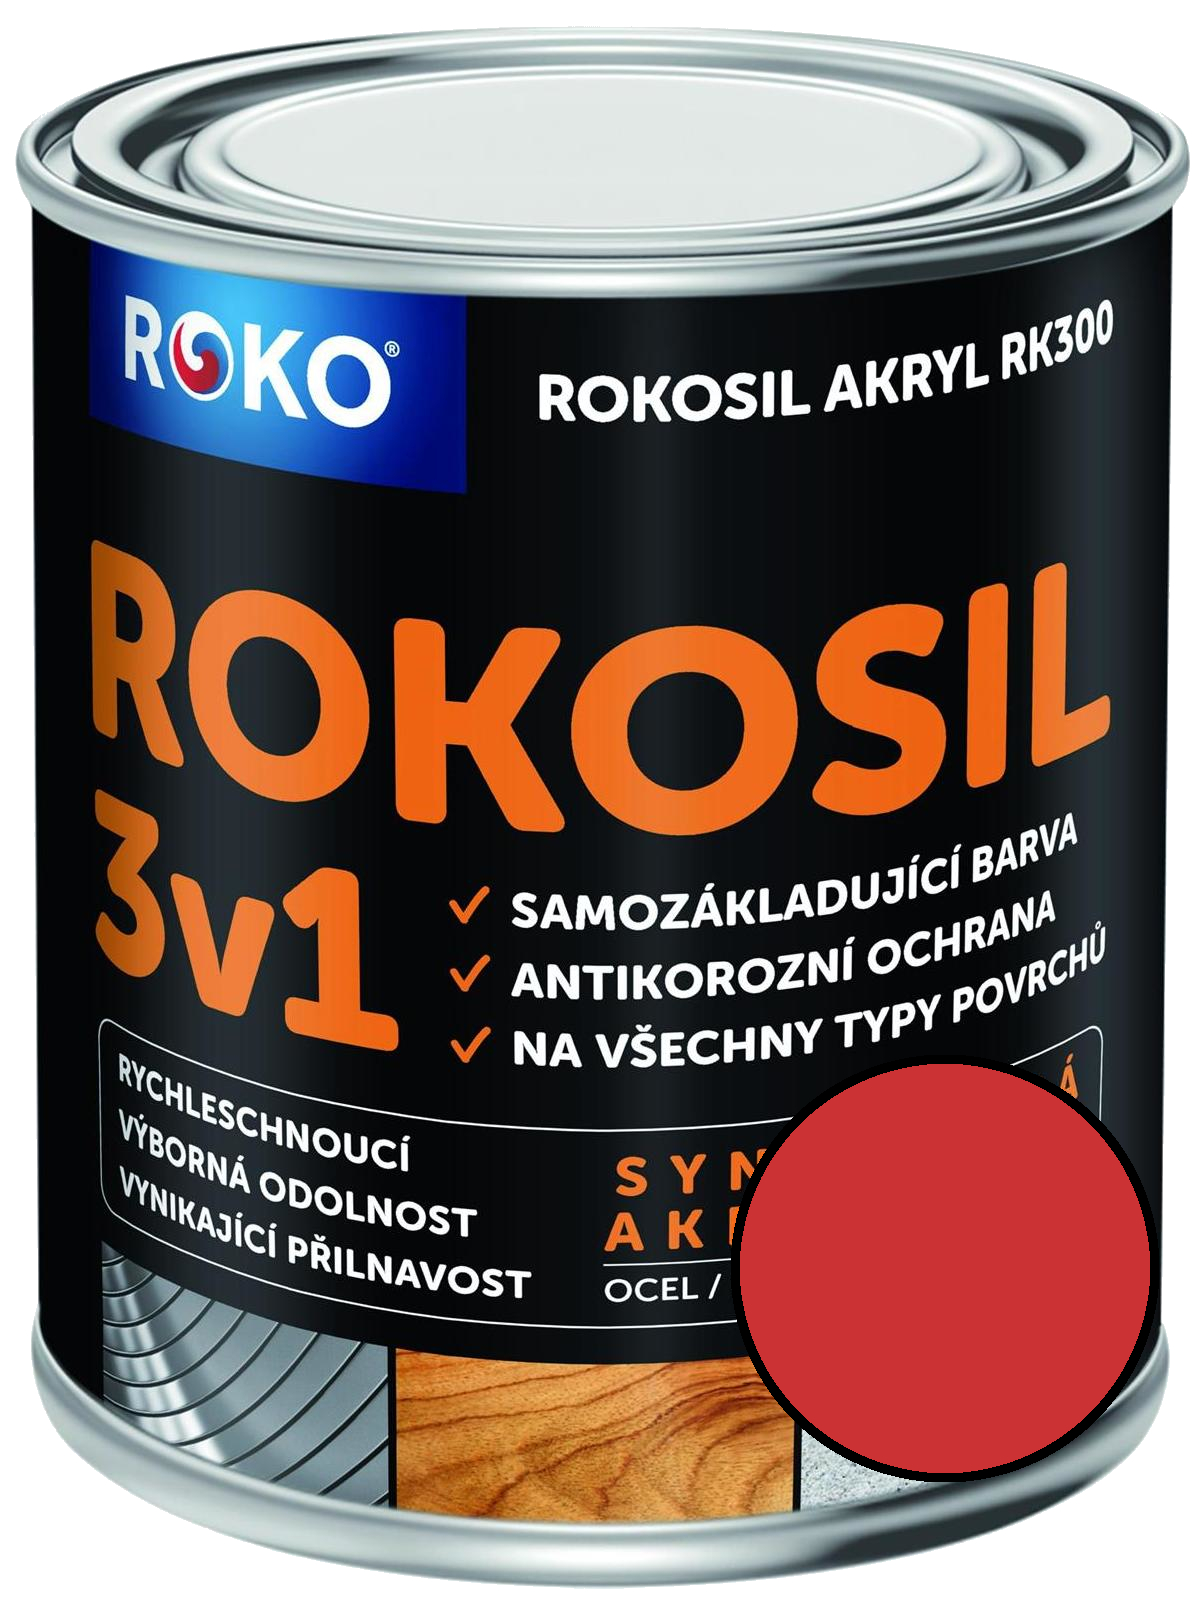 Barva samozákladující Rokosil akryl 3v1 RK 300 8140 červená světlá